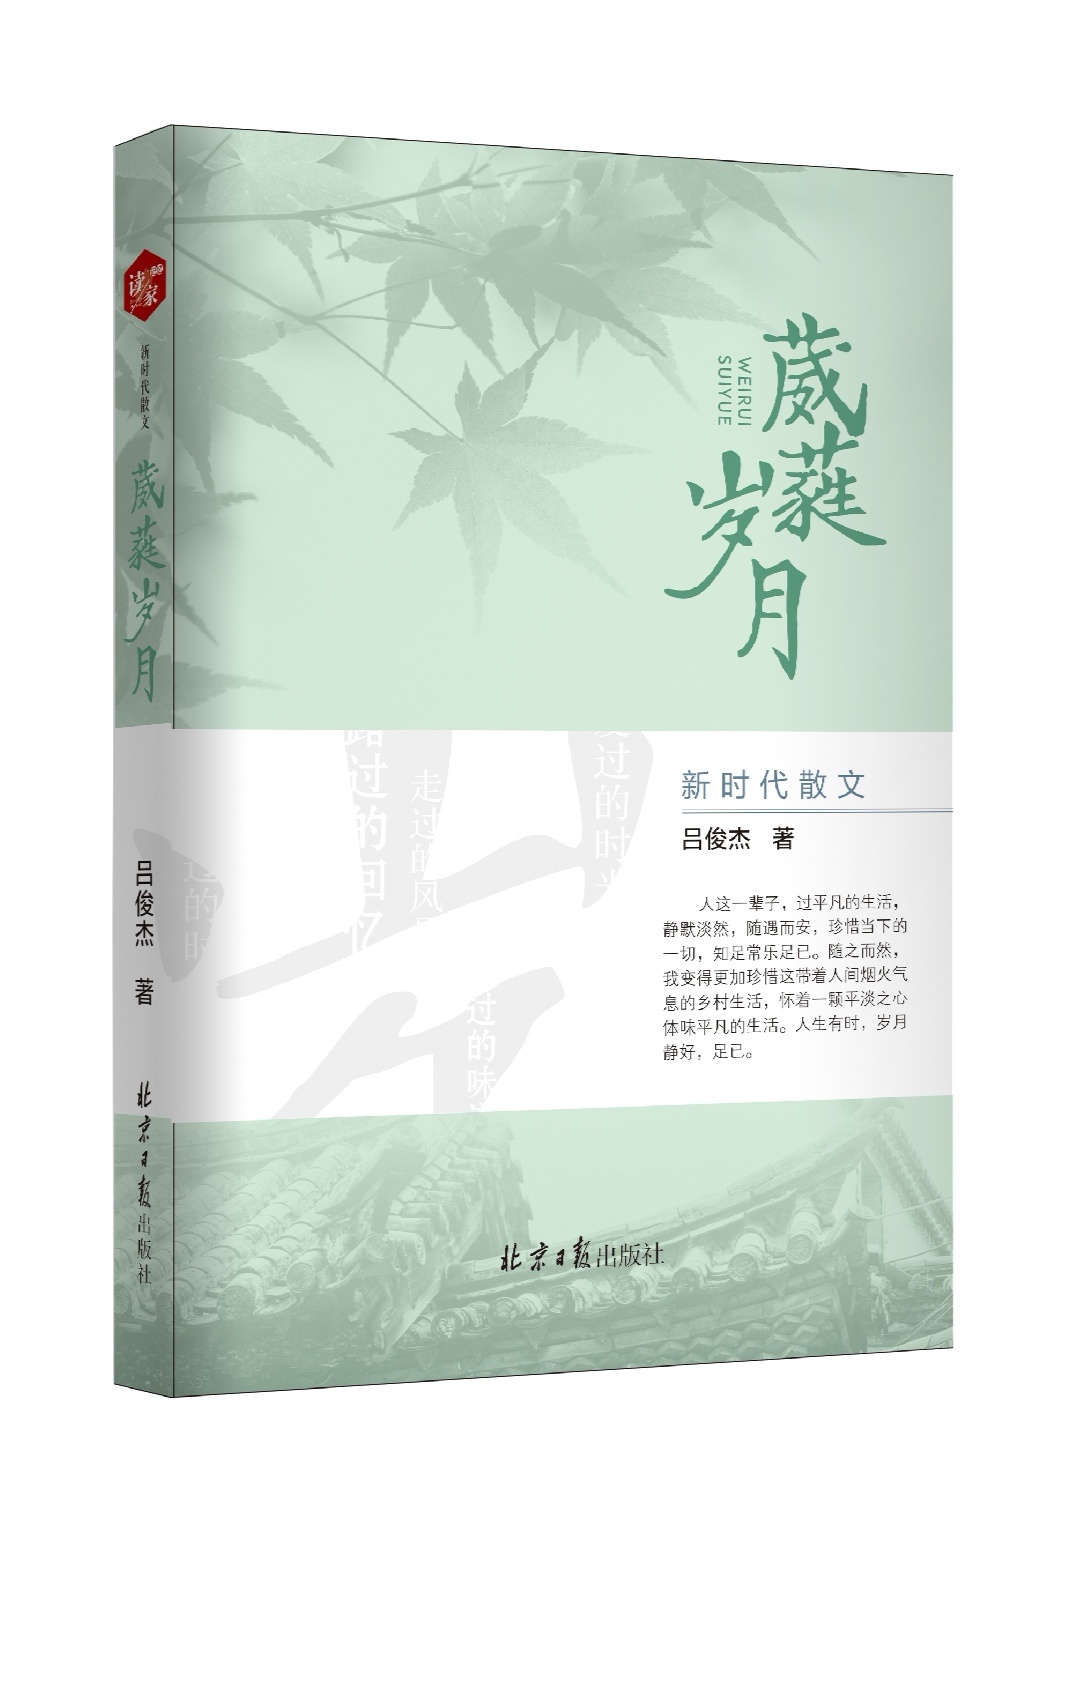 海南省作家协会会员吕俊杰散文集《葳蕤岁月》出版发行